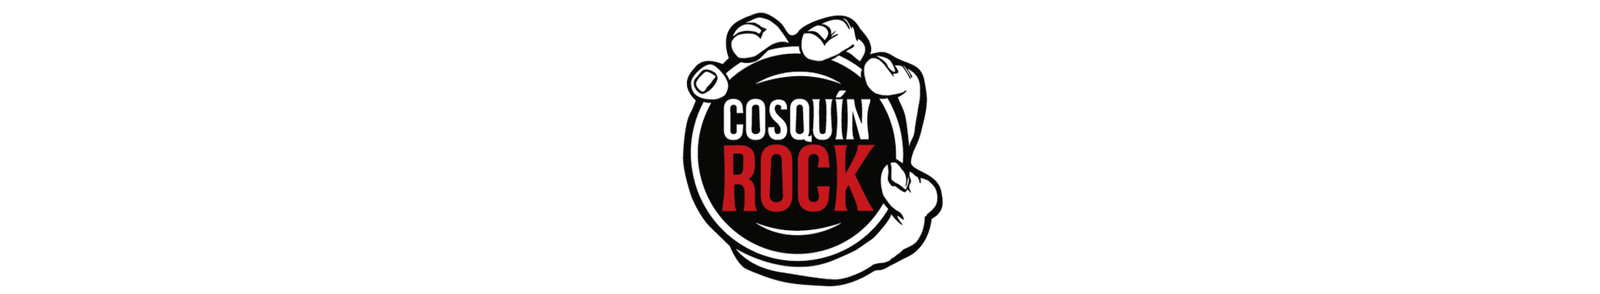 cosquinrock